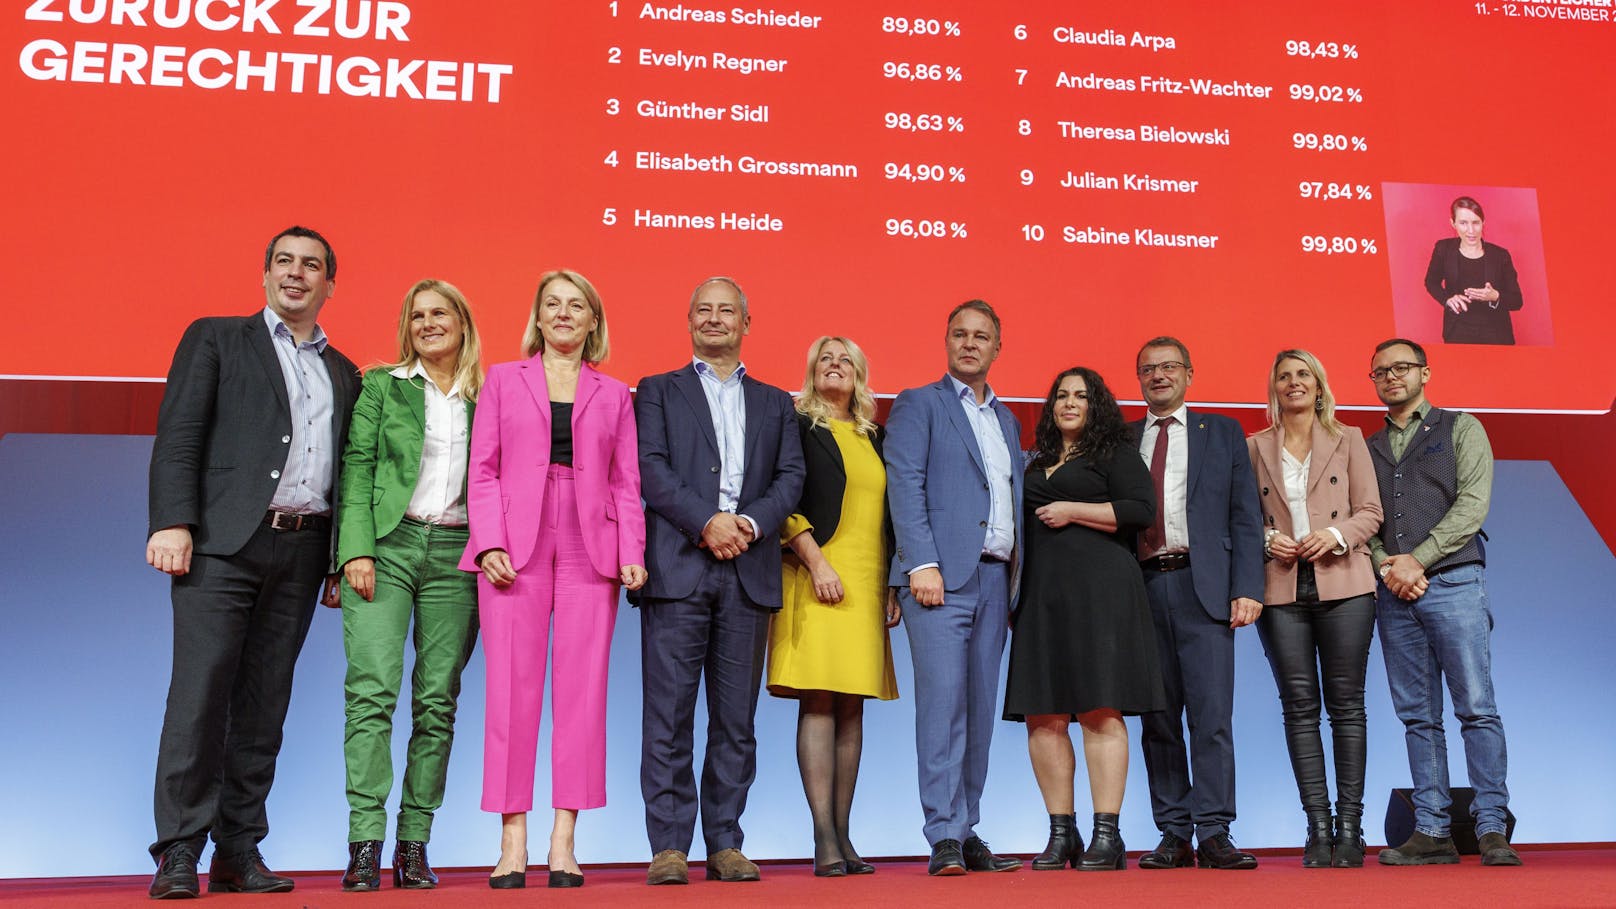 Die EU-Spitzenkandidaten Evelyn Regner (SPÖ), Andreas Schieder (SPÖ) und SPÖ Chef Andreas Babler mit weiteren Kandidatinnen und Kandidaten für die EU-Wahl während des SPÖ Bundesparteitags.